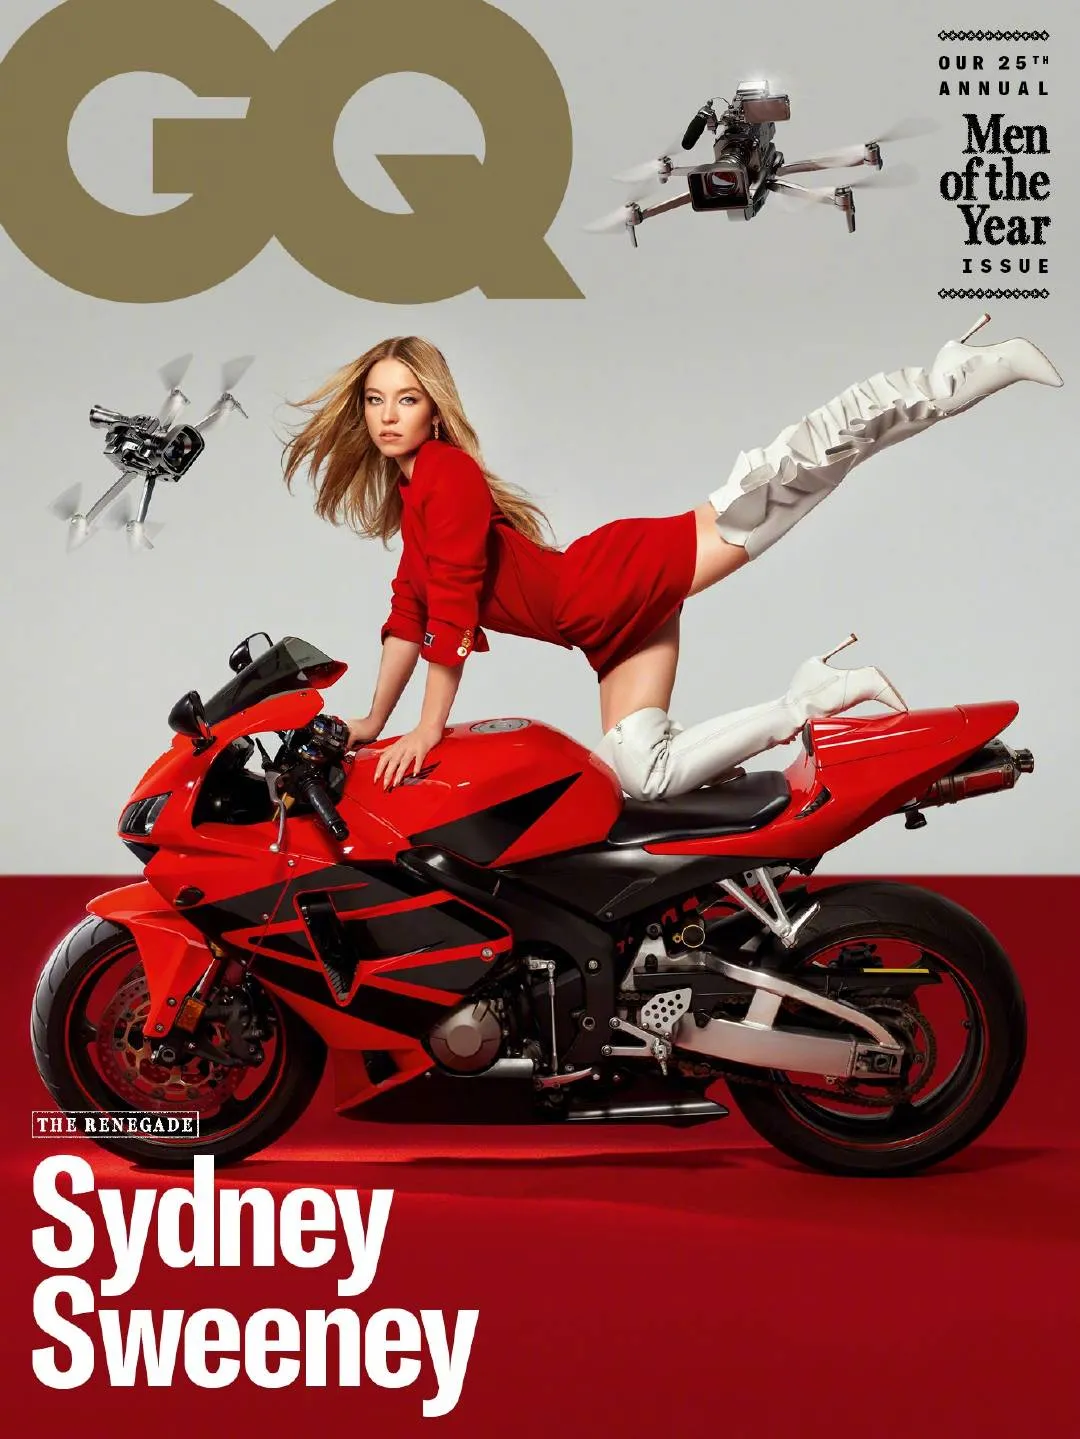 Sydney Sweeney, 'GQ' magazine photo | FMV6